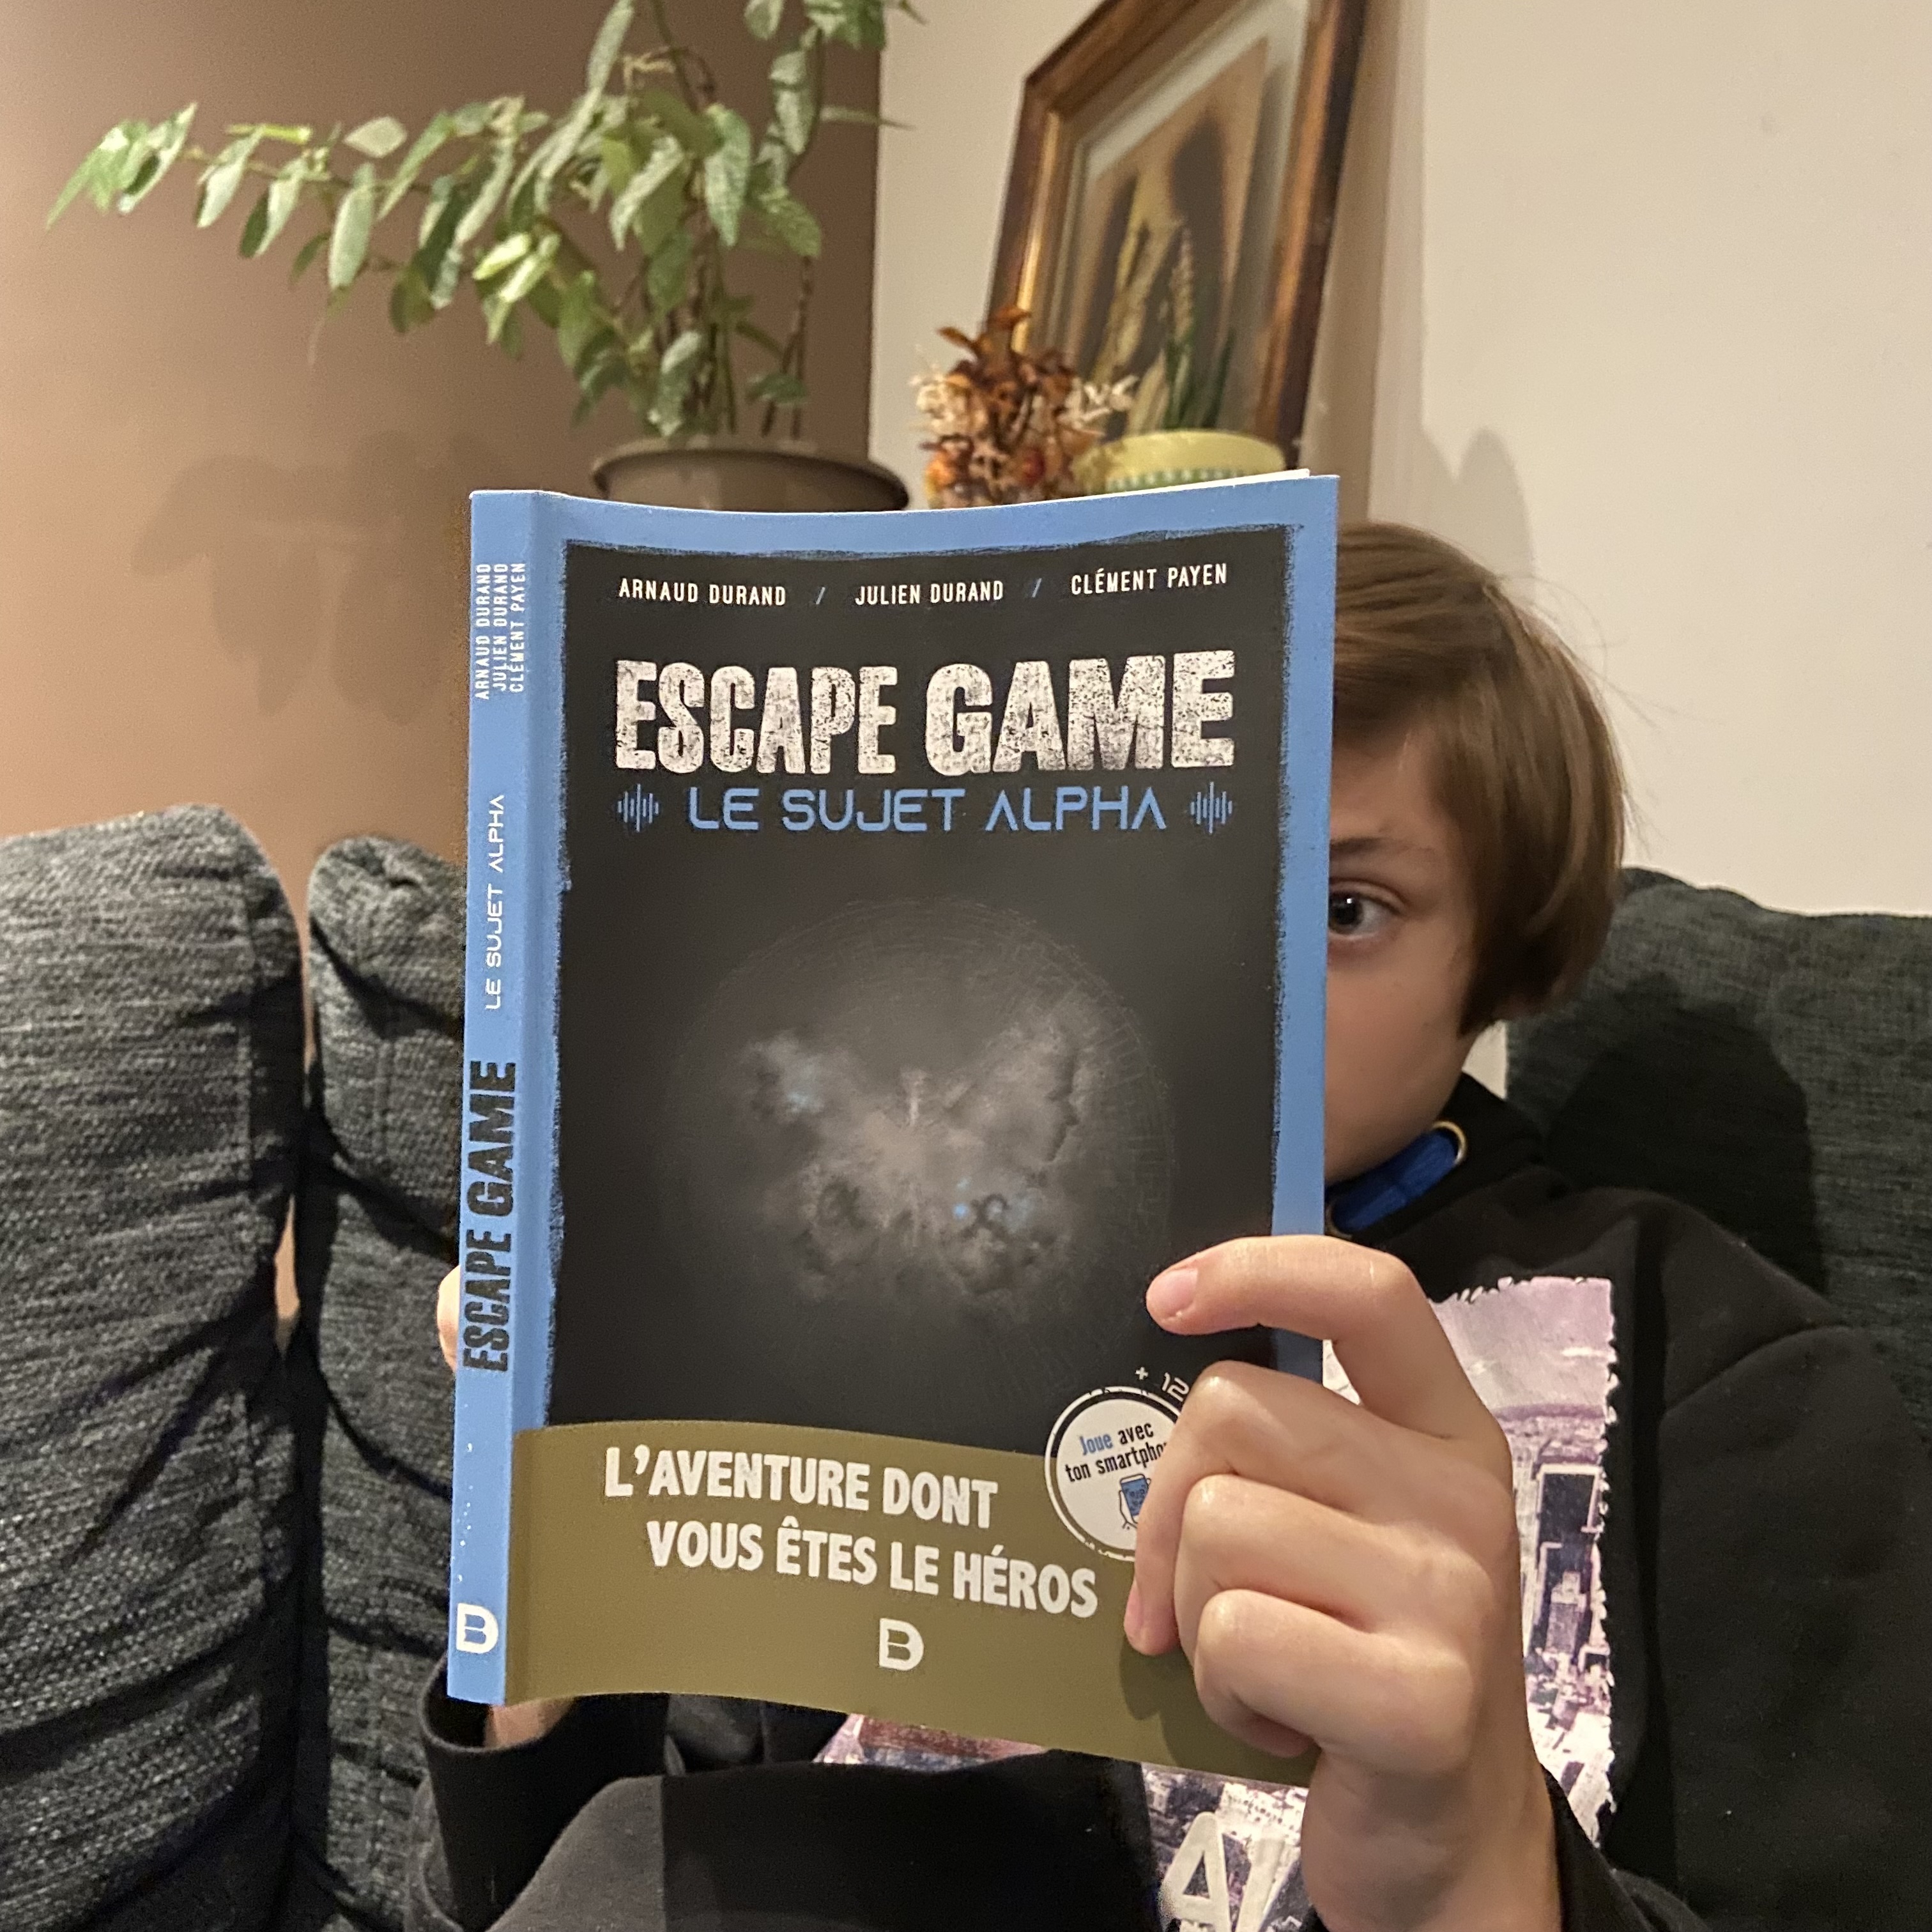 Escape Game "Le sujet Alpha"